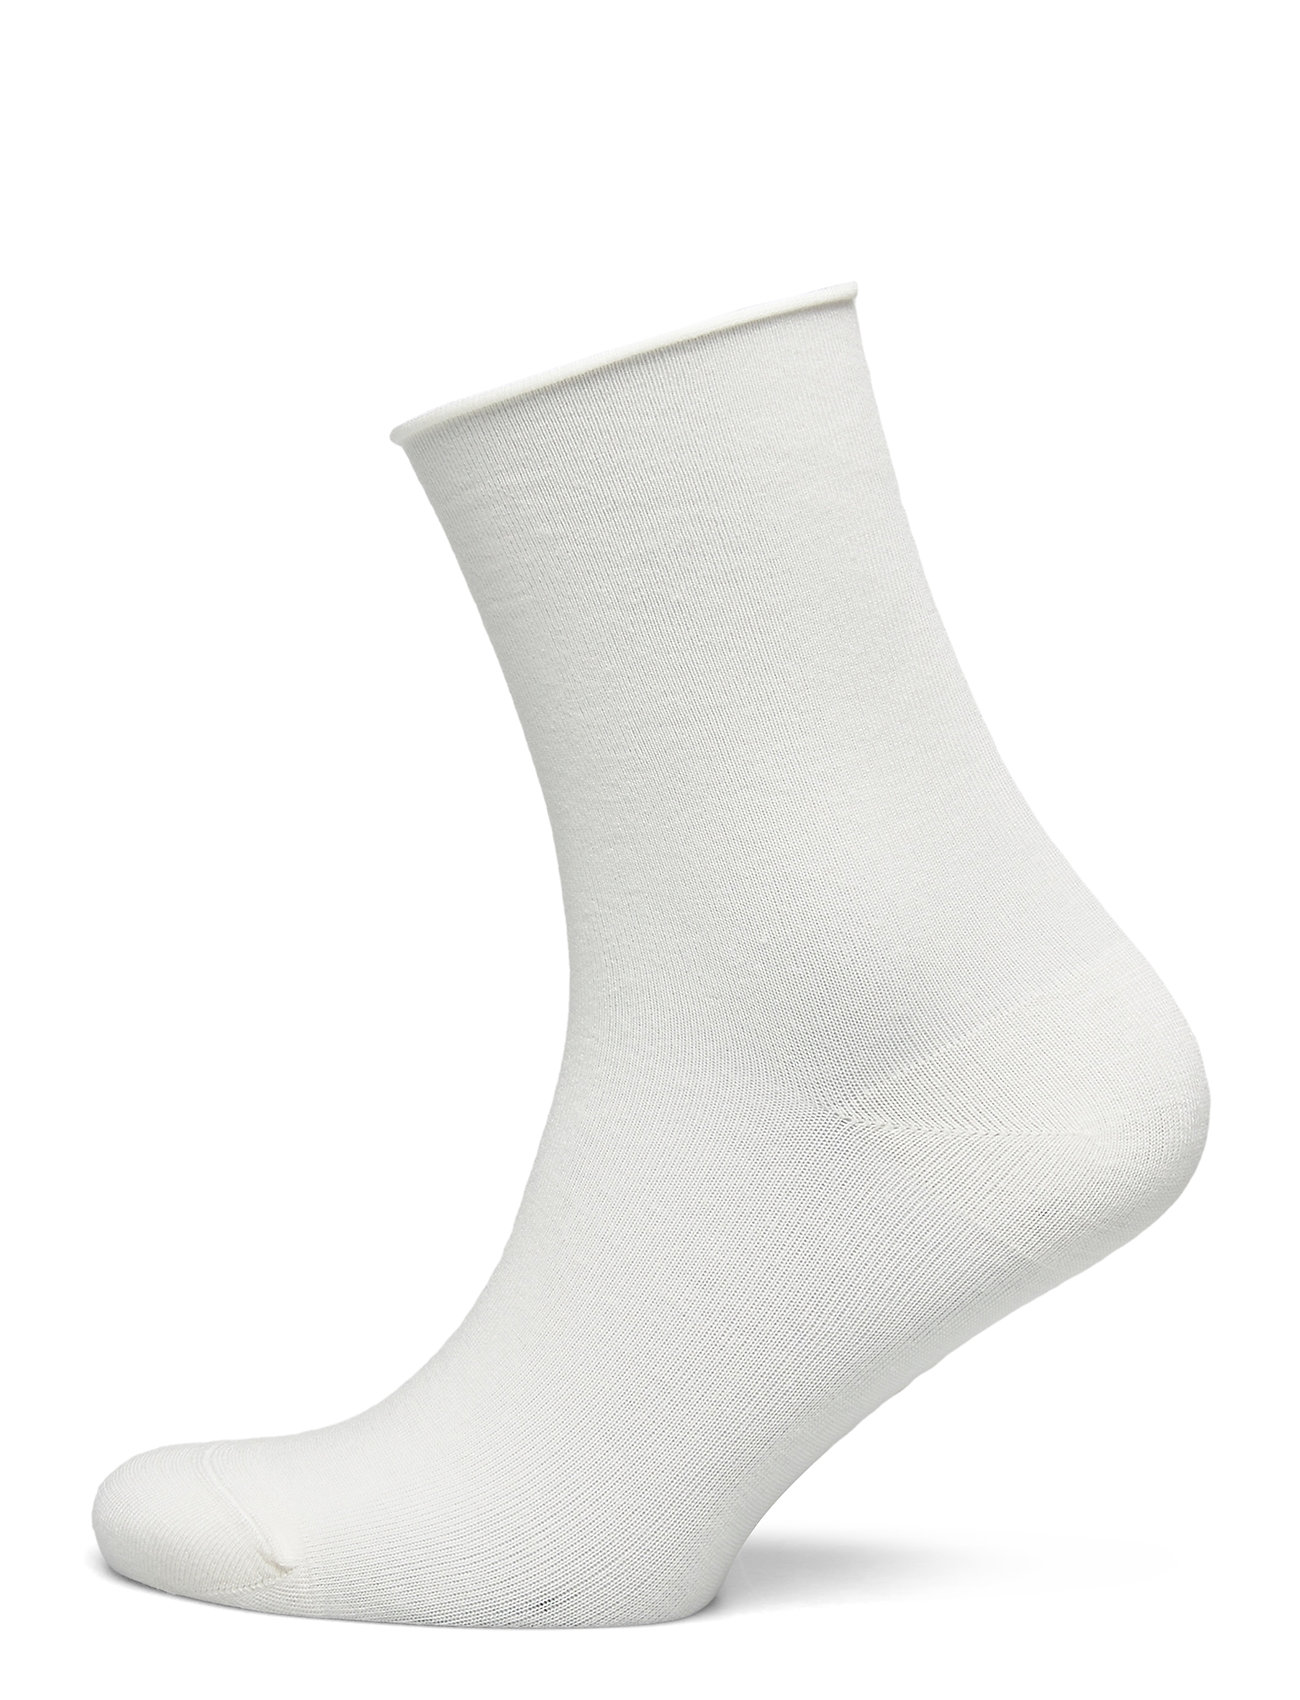 Ladies Anklesock, Bamboo Comfort Top Socks Lingerie Socks Footies/Ankle Socks Valkoinen Vogue